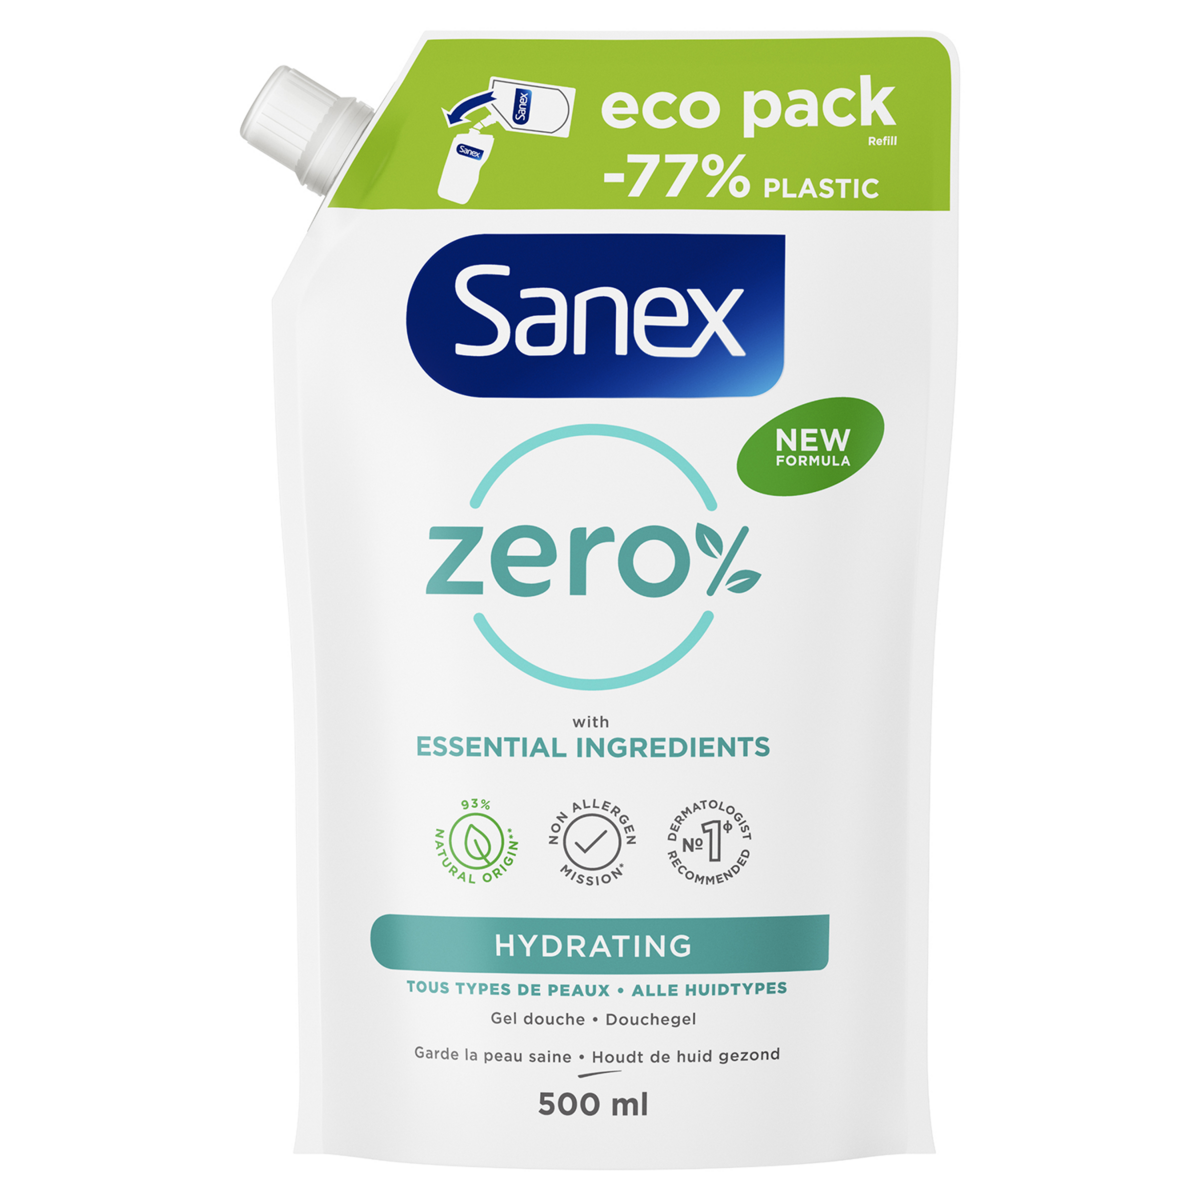 SANEX Zéro% Recharge gel douche tous types de peaux 500g